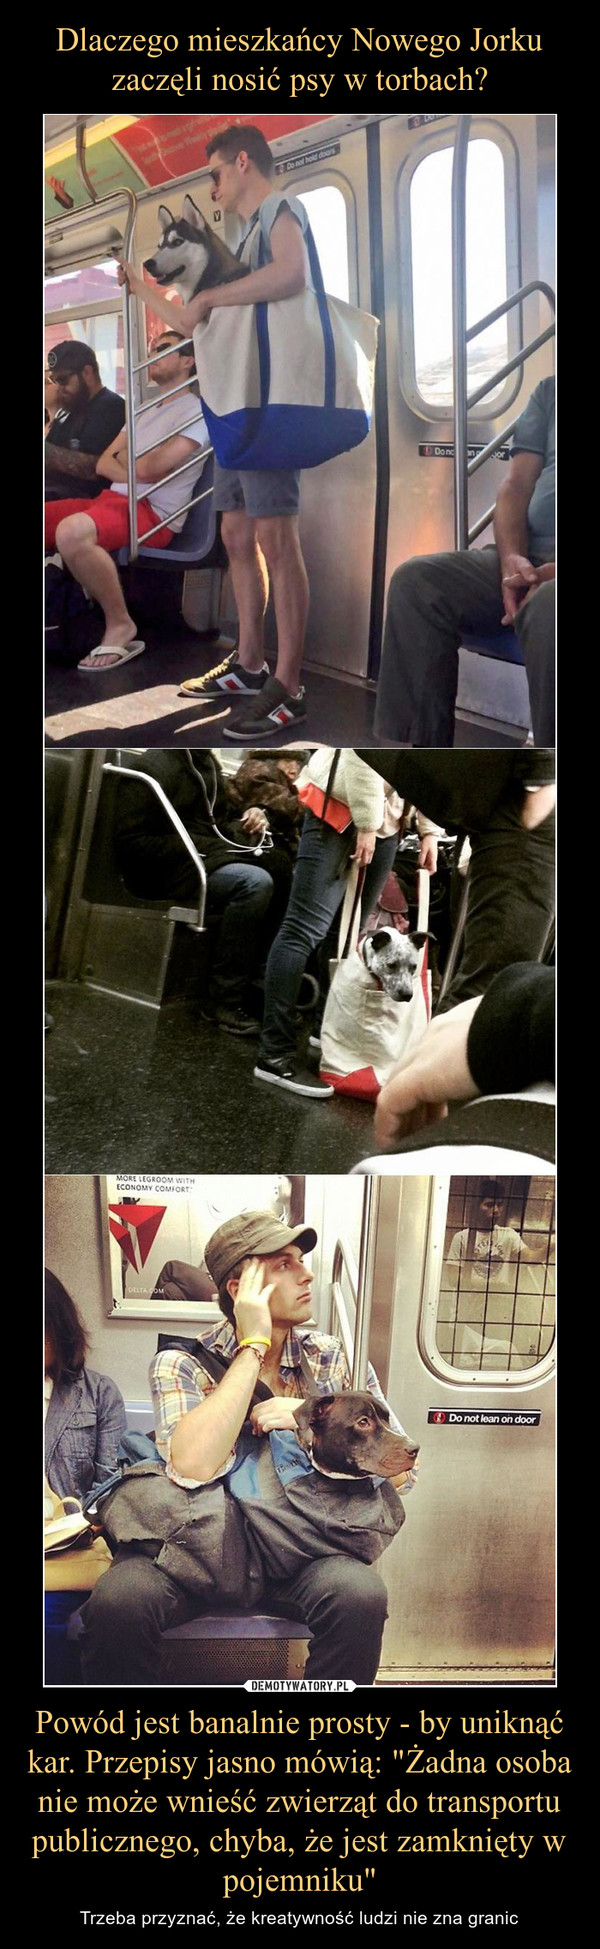 Dlaczego mieszkańcy Nowego Jorku zaczęli nosić psy w torbach? Powód jest banalnie prosty - by uniknąć kar. Przepisy jasno mówią: "Żadna osoba nie może wnieść zwierząt do transportu publicznego, chyba, że jest zamknięty w pojemniku"